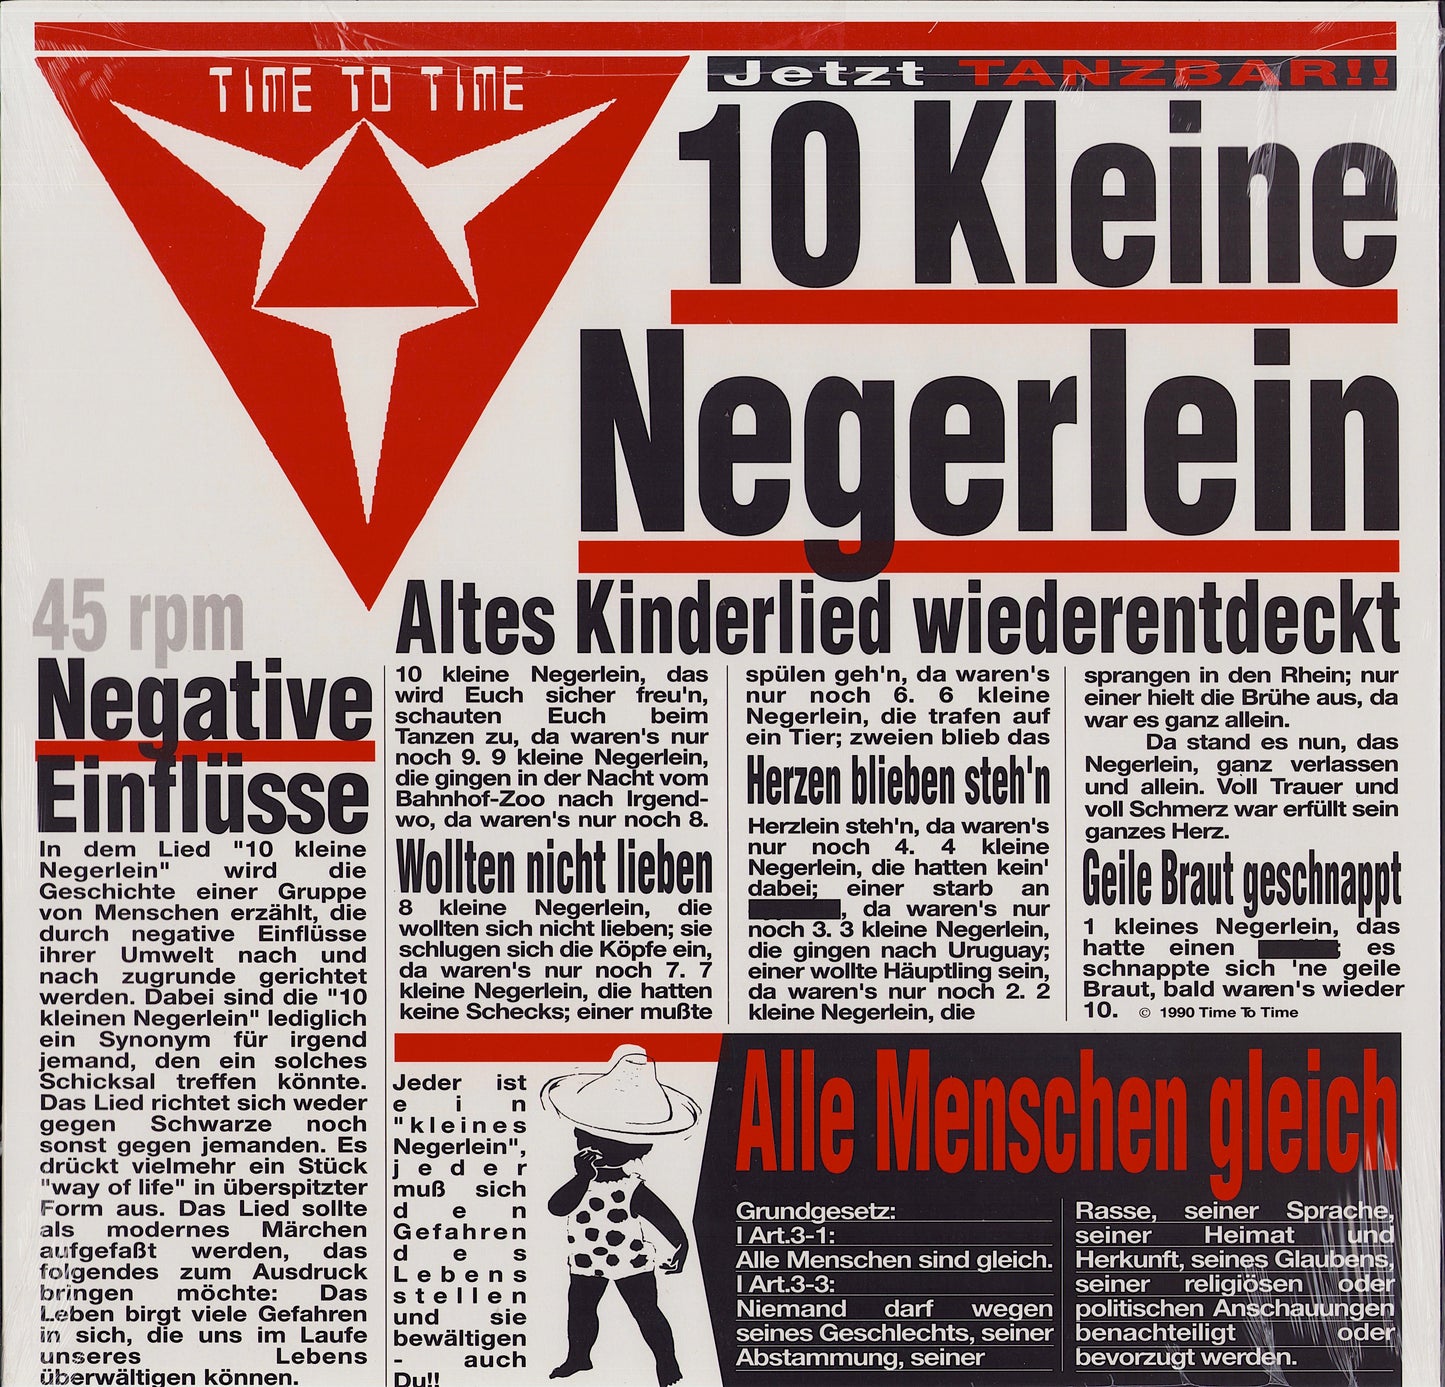 Time To Time ‎- 10 Kleine Negerlein (Vinyl 12")